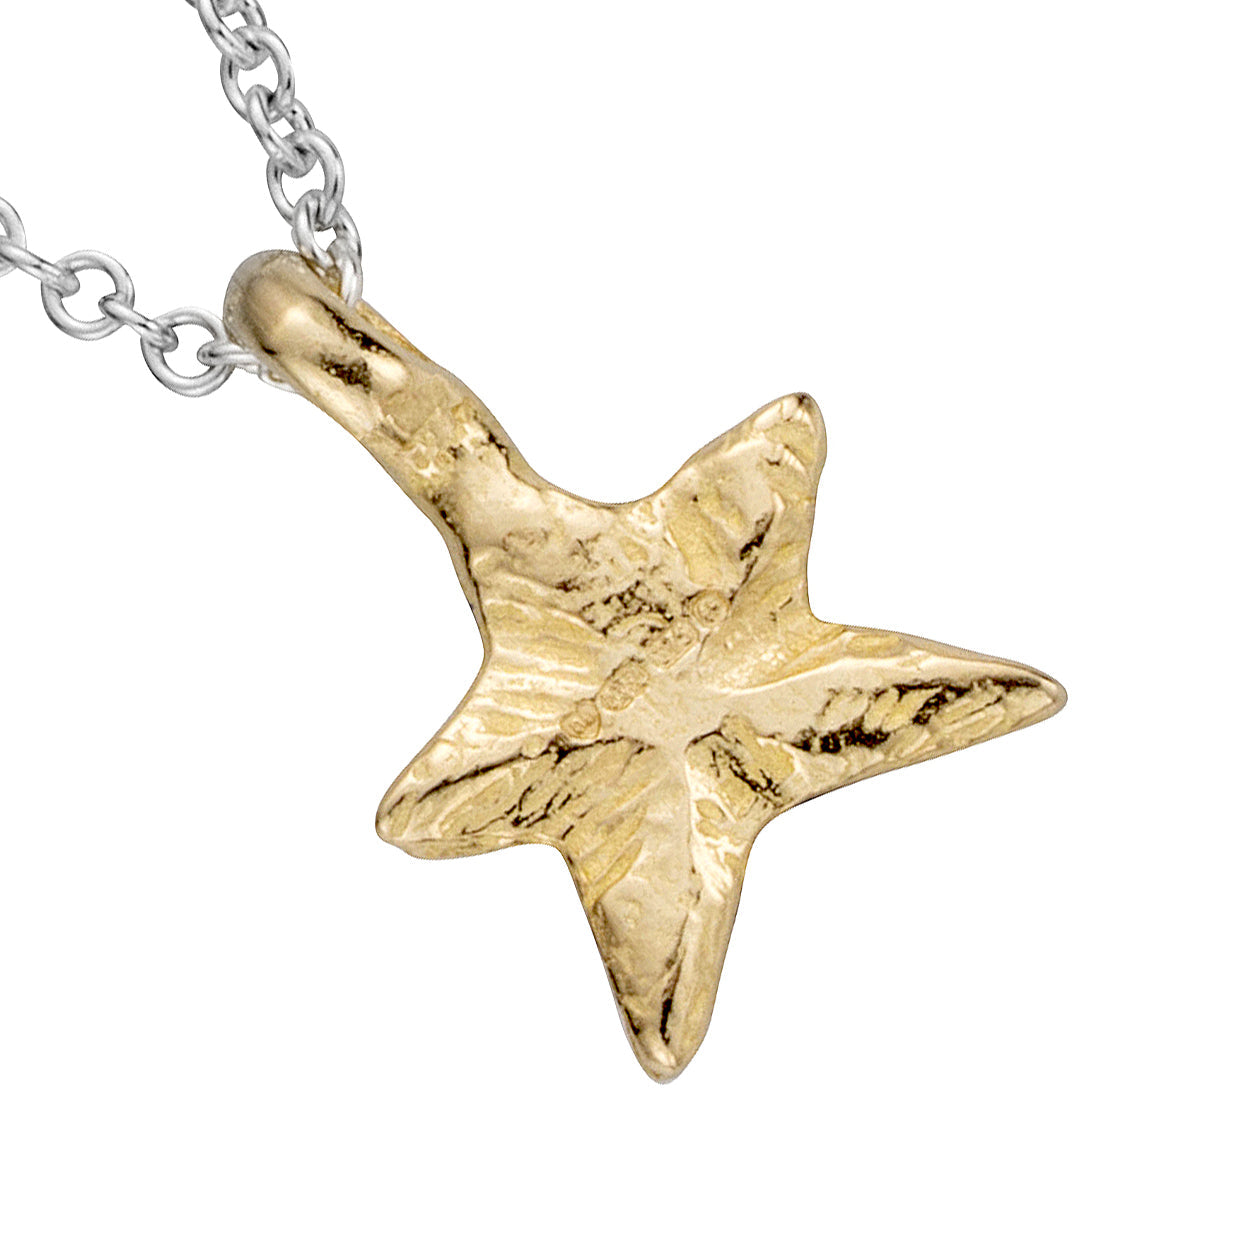 Silver & Gold Mini Star Necklace